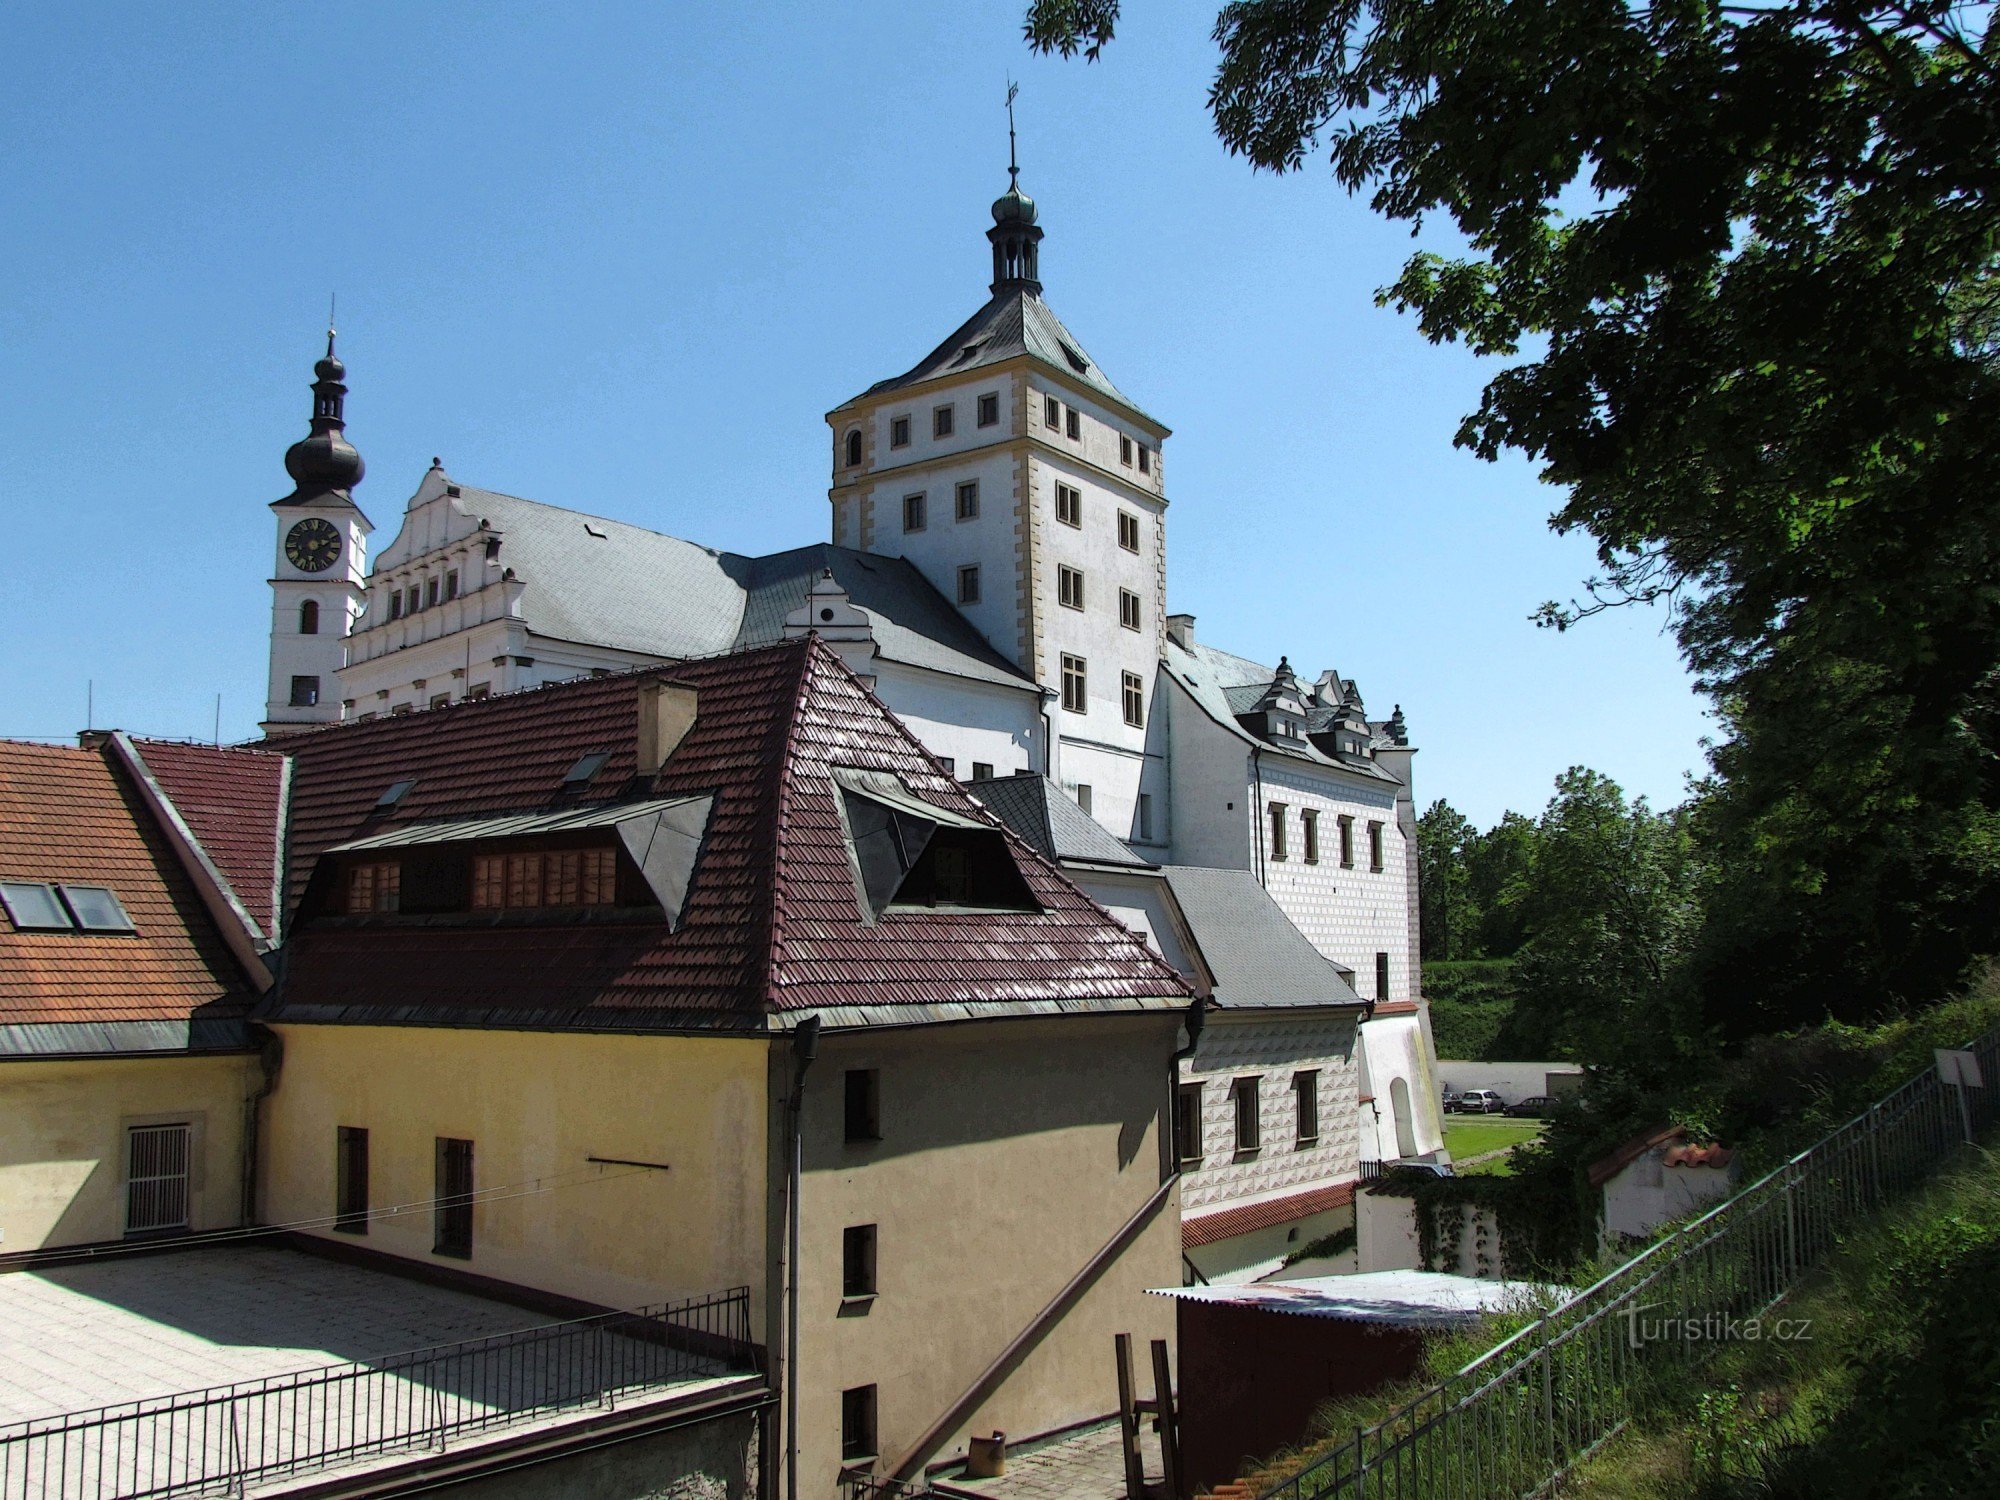 Bezoek aan het kasteel in Pardubice